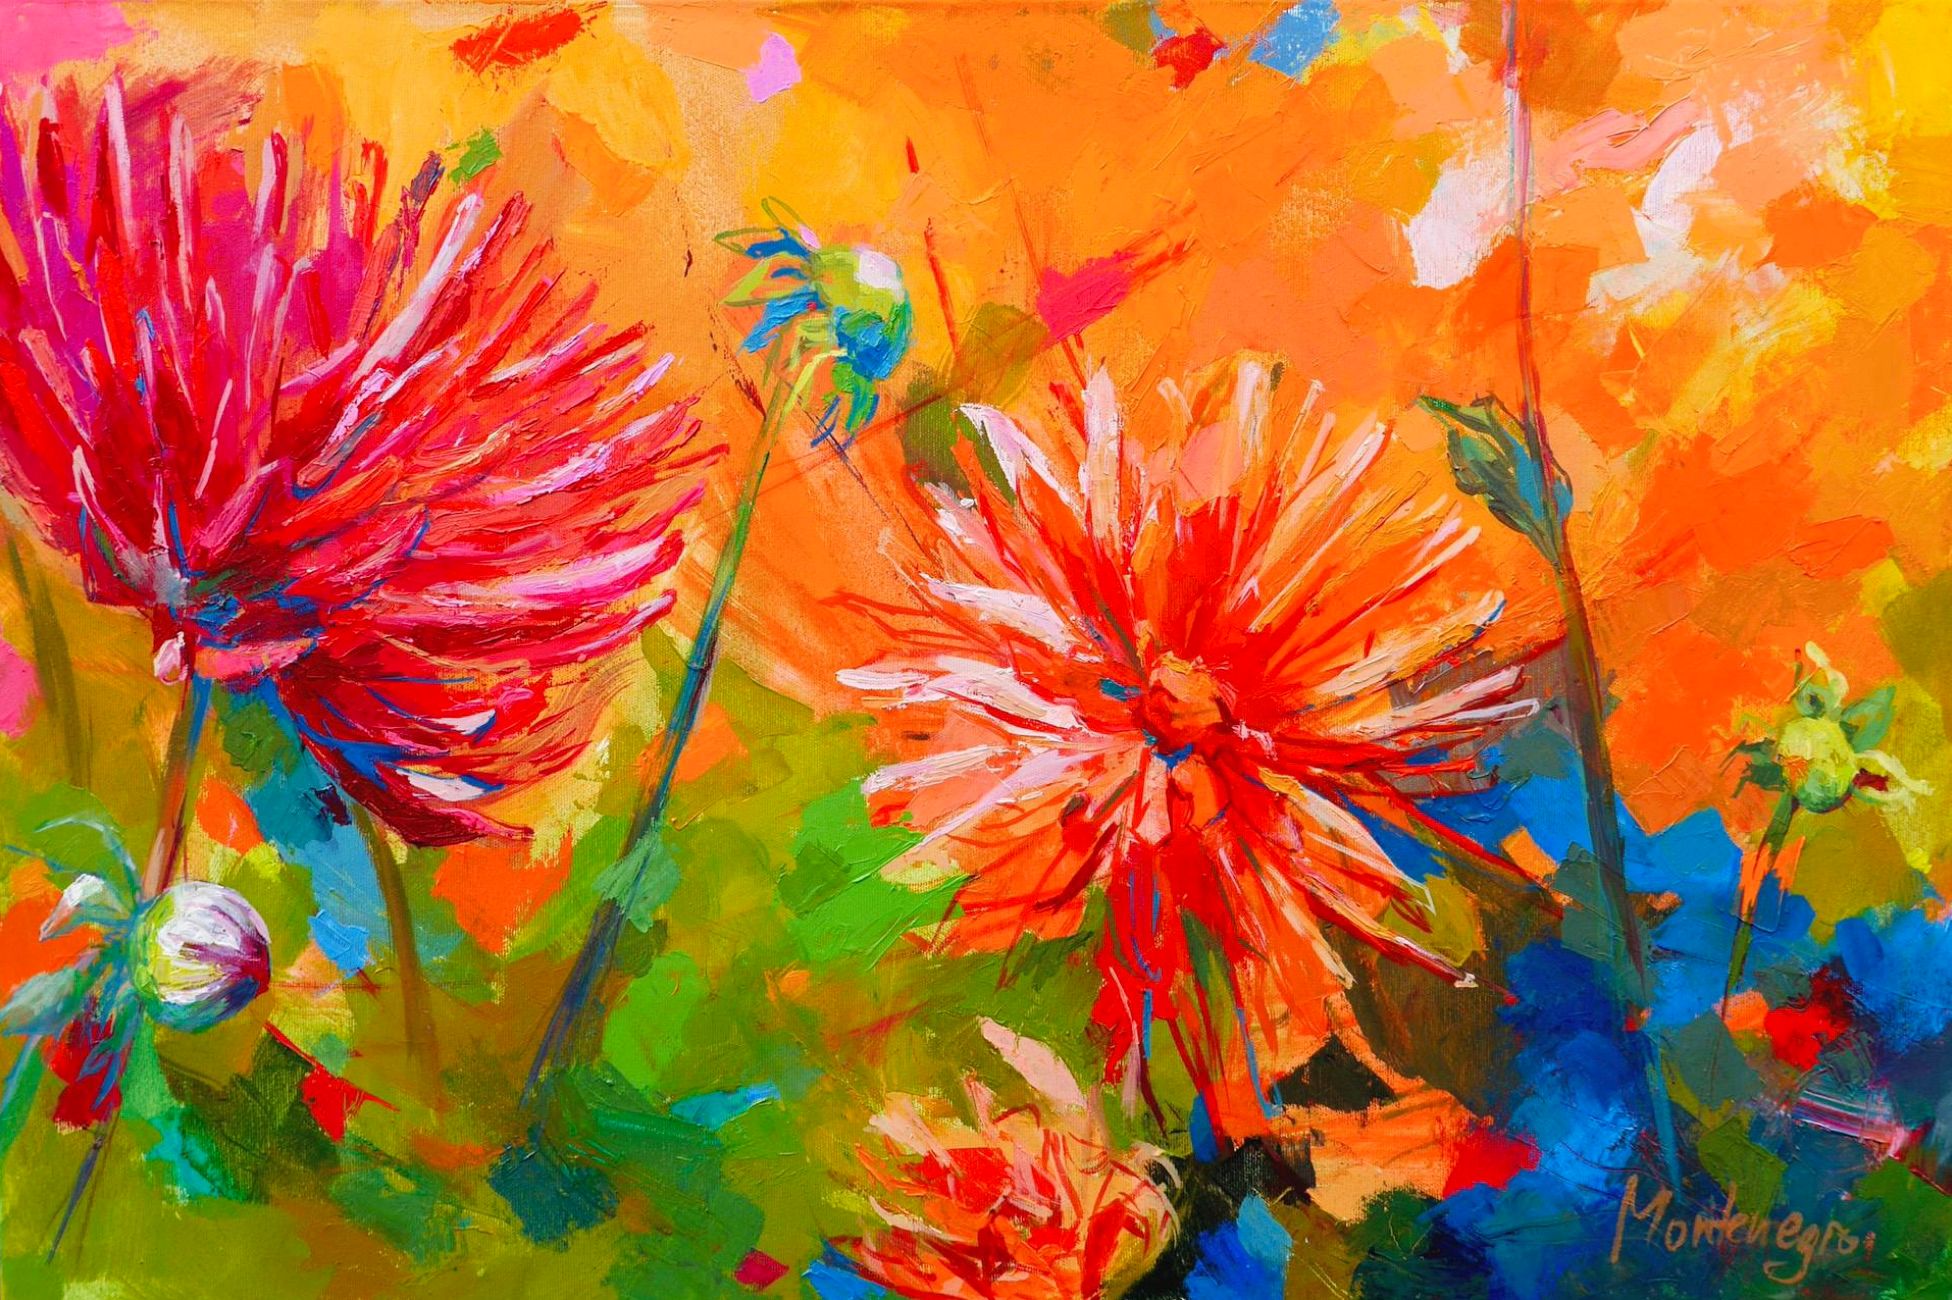 米里亚姆-黑山的表现主义绘画橙红色的花朵与彩色的背景